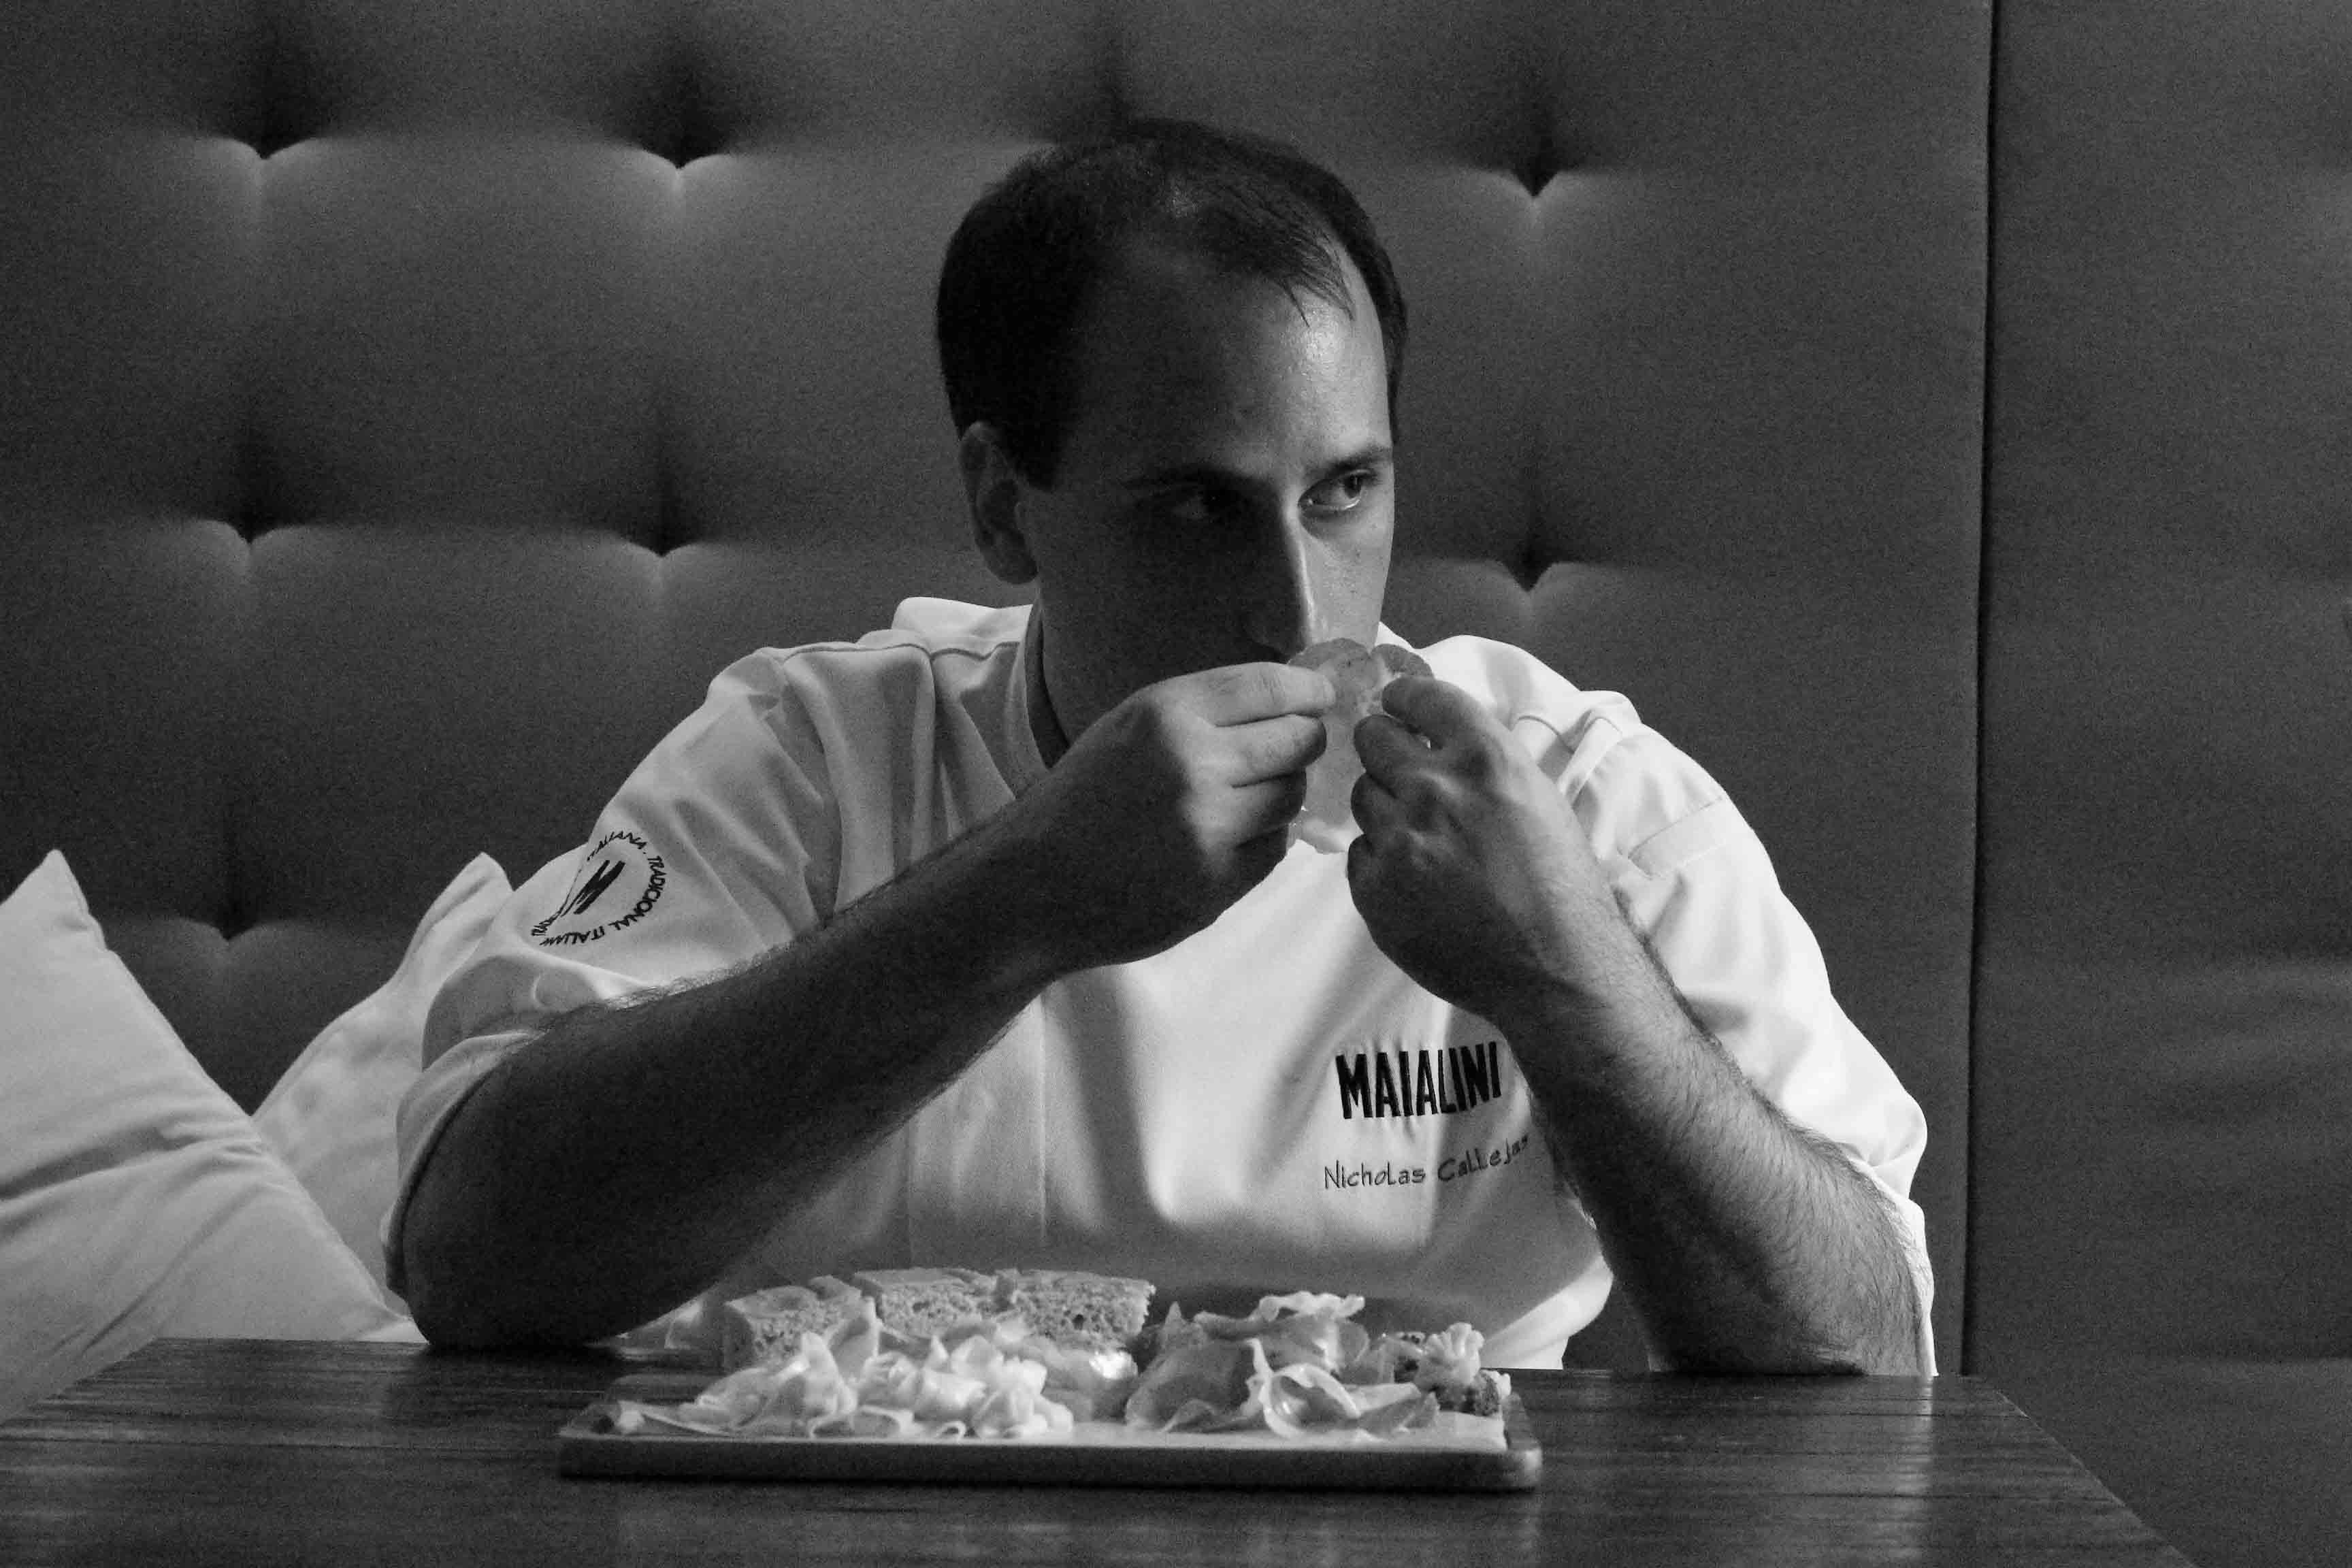 Nicholas Callejas, chef do Maialini: 